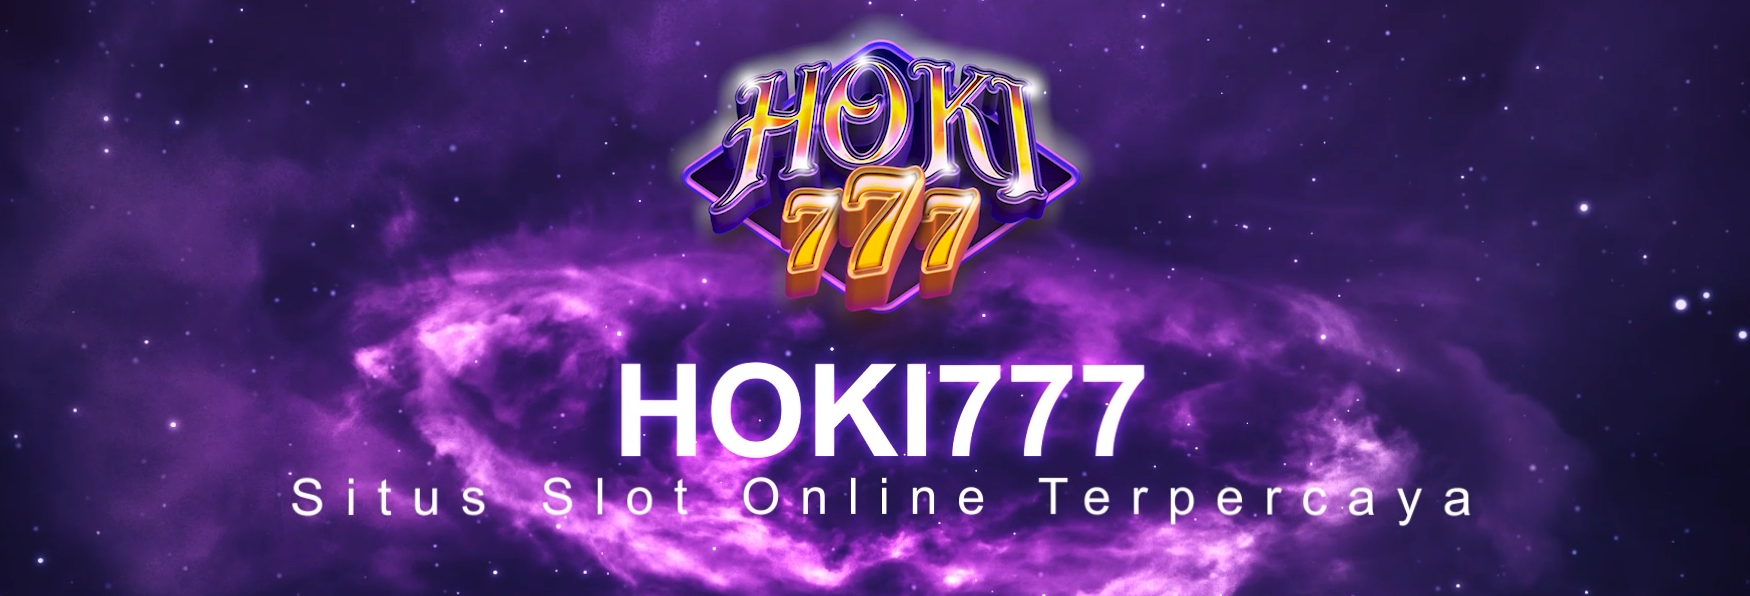 Perbandingan Situs Hoki777 dengan Situs Judi Lainnya